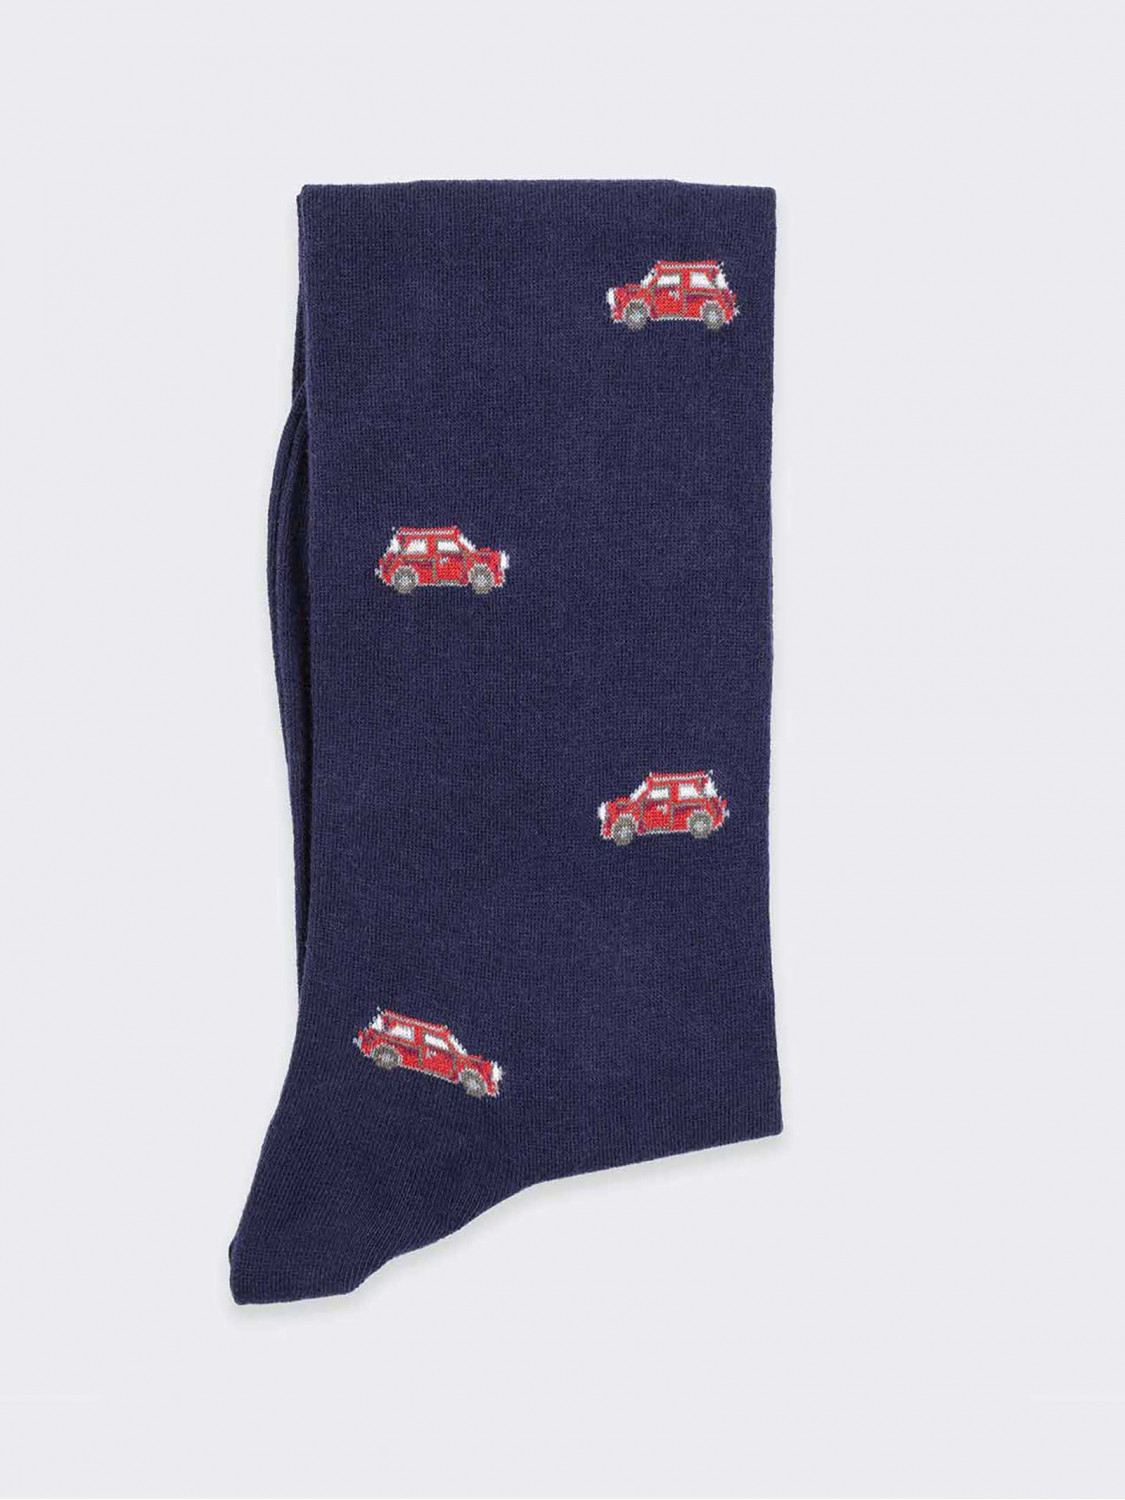 Little cars pattern Men's Knee High Socks